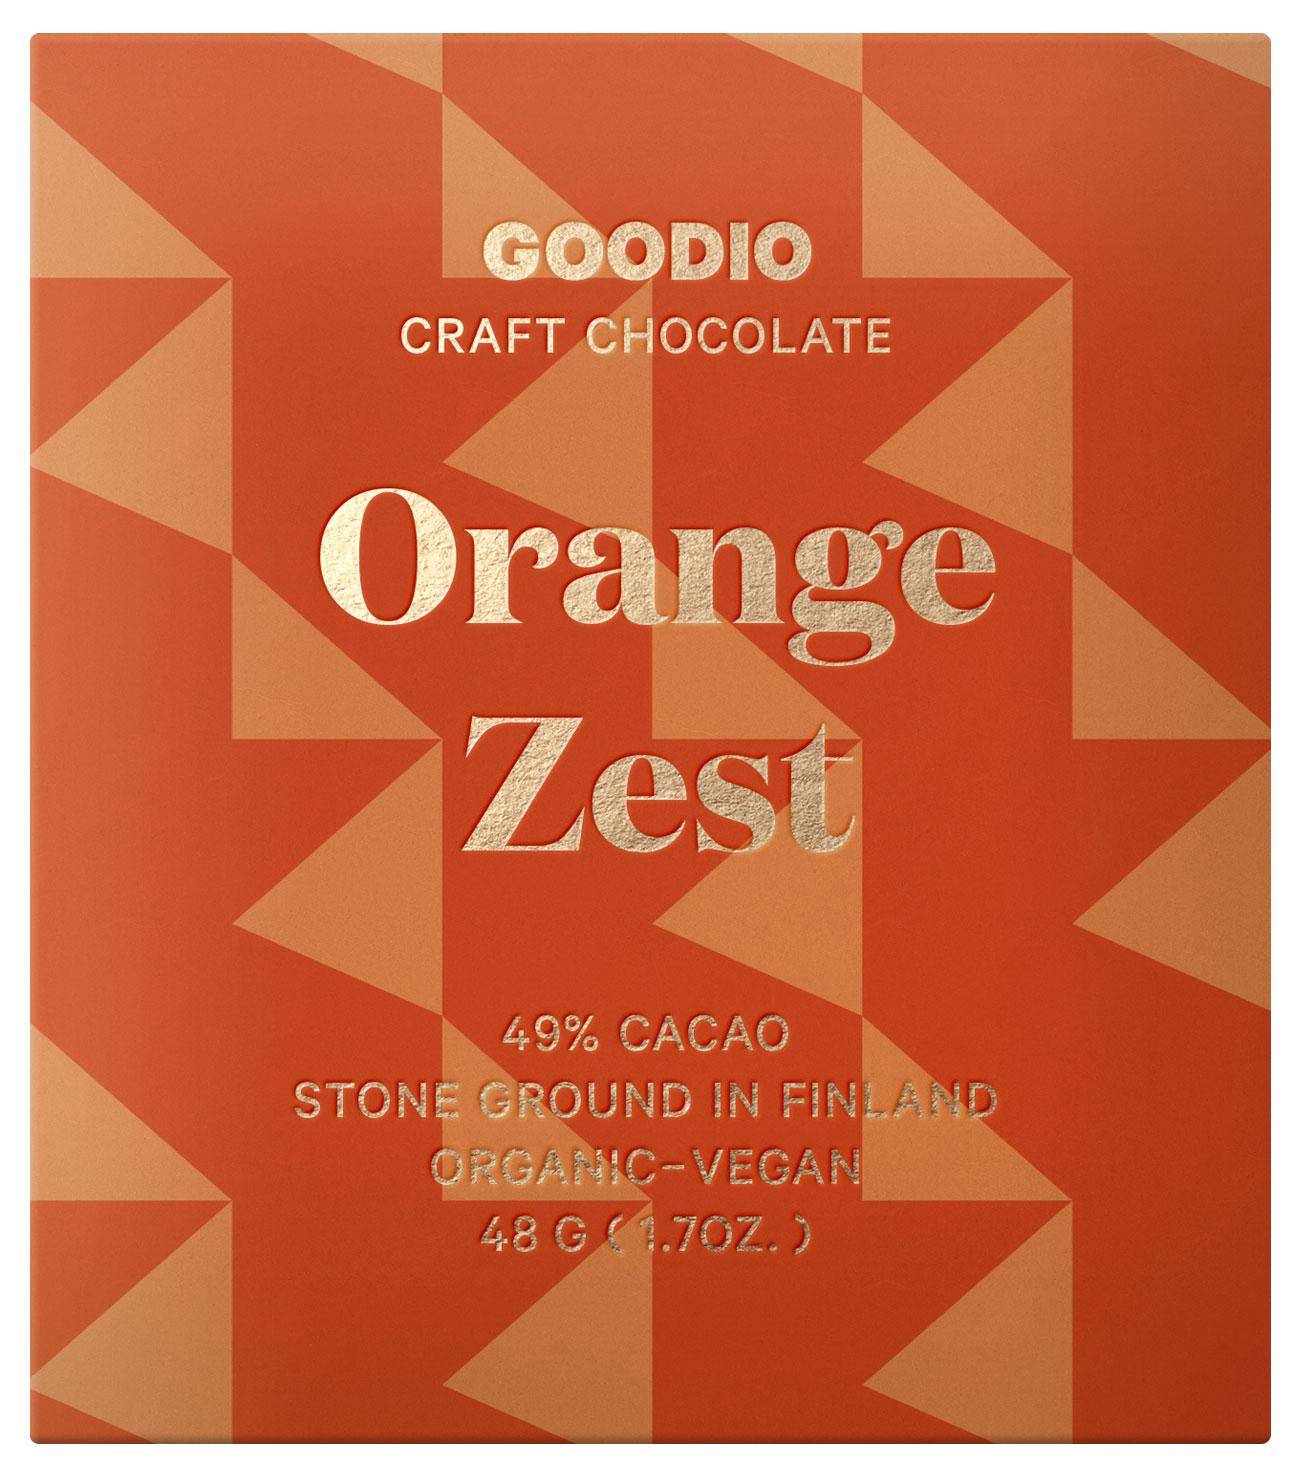 Verpackung der Orangen-Schokolade in orange mit pfirsichfarbenen Dreiecken und goldener Schrift